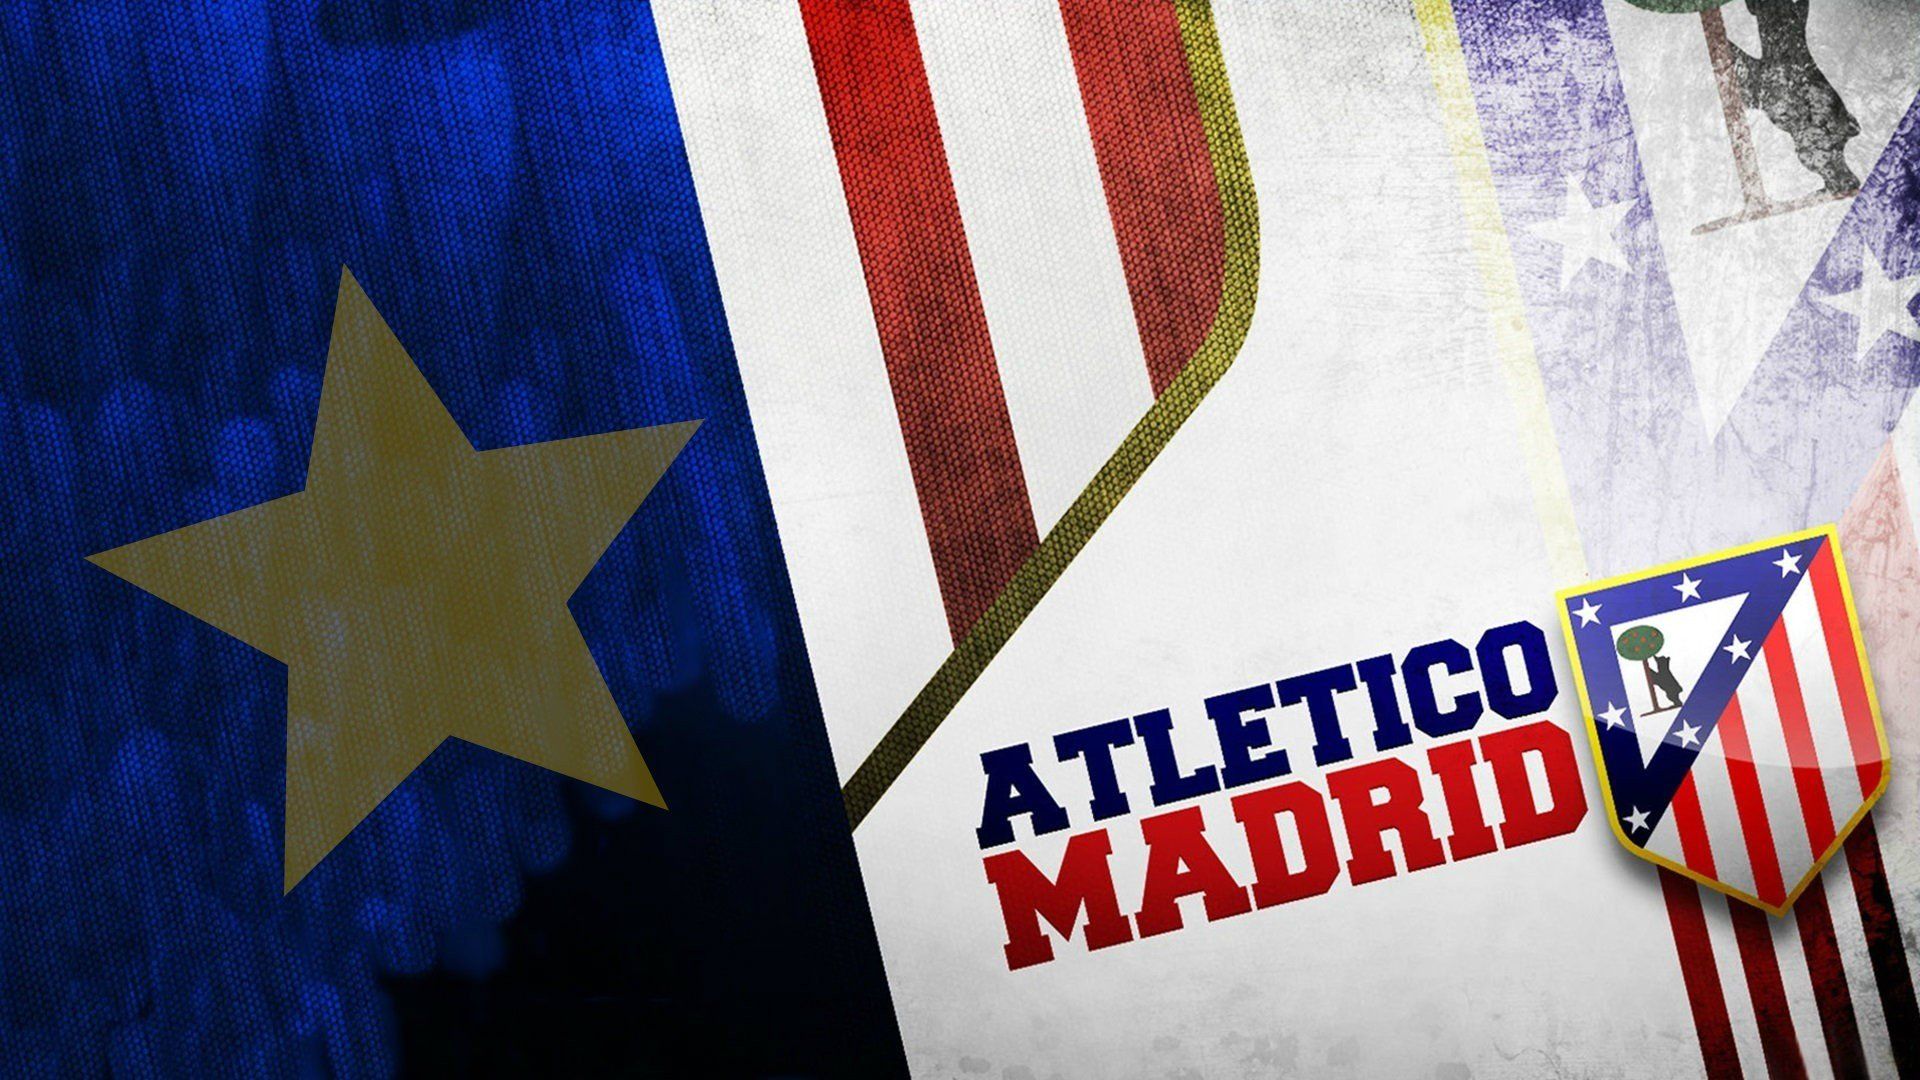 HD Atletico Madrid Logo Wallpaper - PixelsTalk.Net